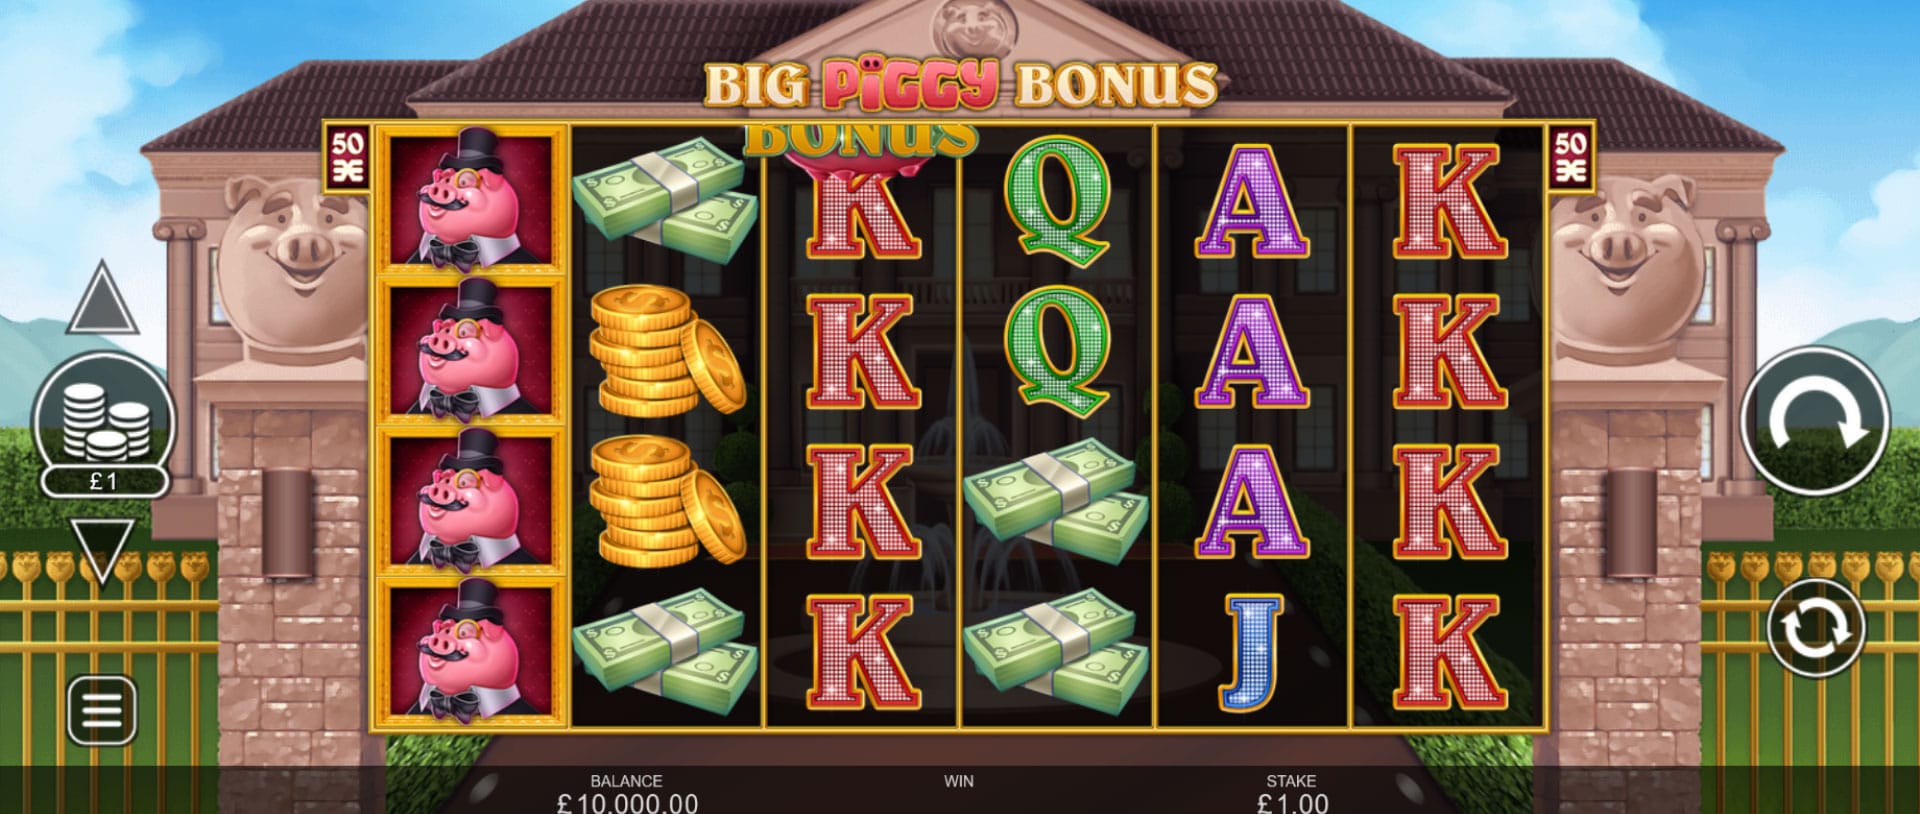 schermata slot machine big piggy bonus